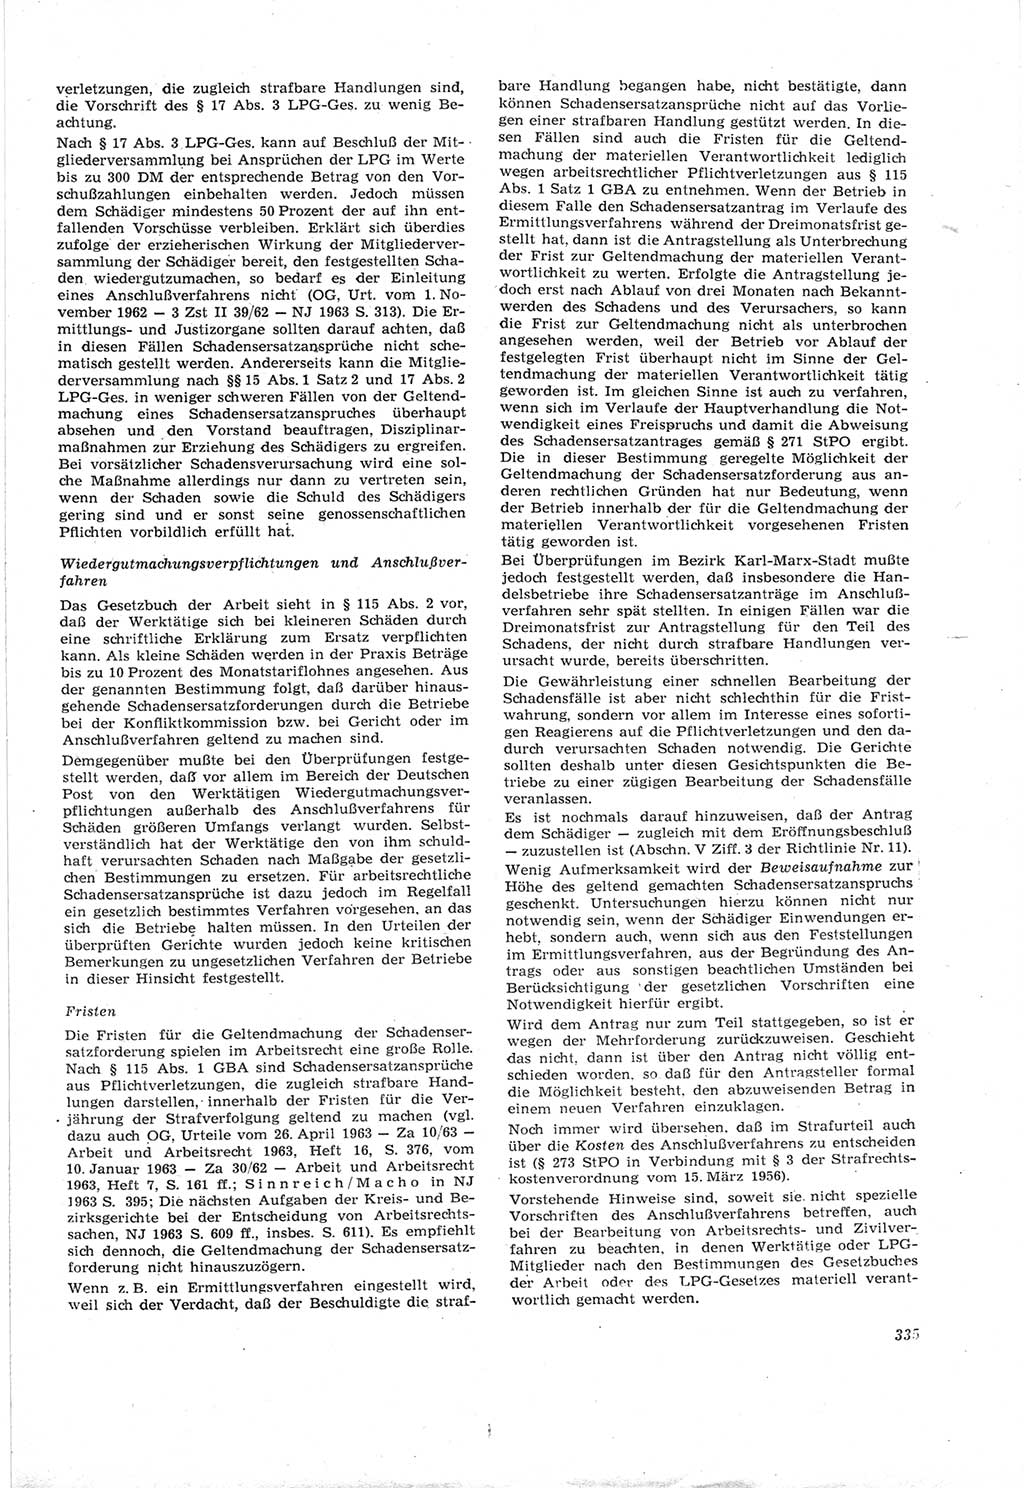 Neue Justiz (NJ), Zeitschrift für Recht und Rechtswissenschaft [Deutsche Demokratische Republik (DDR)], 18. Jahrgang 1964, Seite 335 (NJ DDR 1964, S. 335)